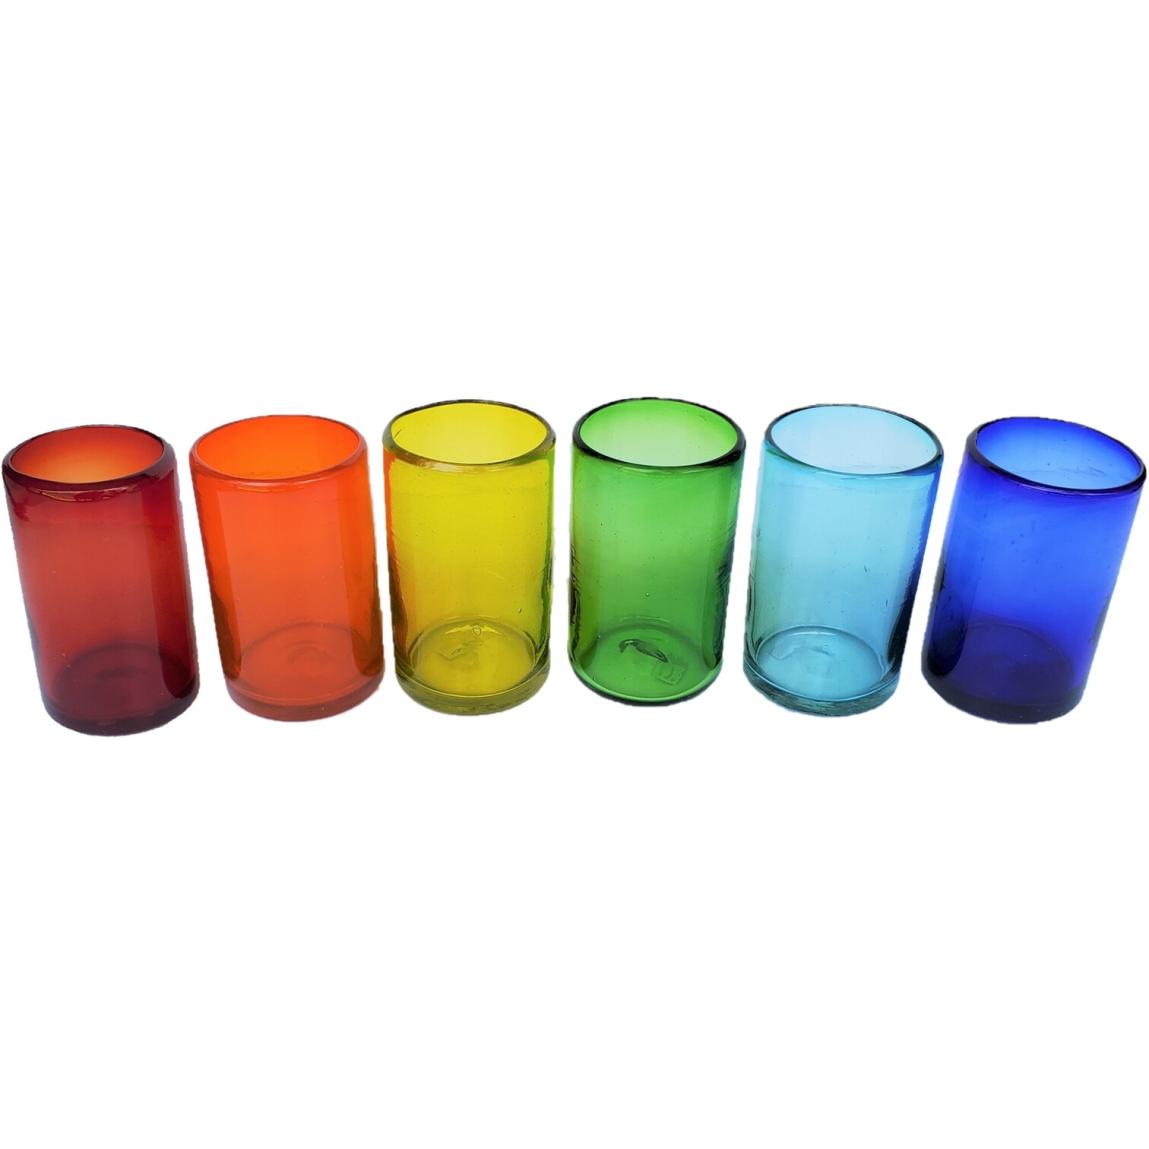 Ofertas / vasos grandes de colores Arcoris, 14 oz, Vidrio Reciclado, Libre de Plomo y Toxinas / stos artesanales vasos le darn un toque clsico a su bebida favorita.